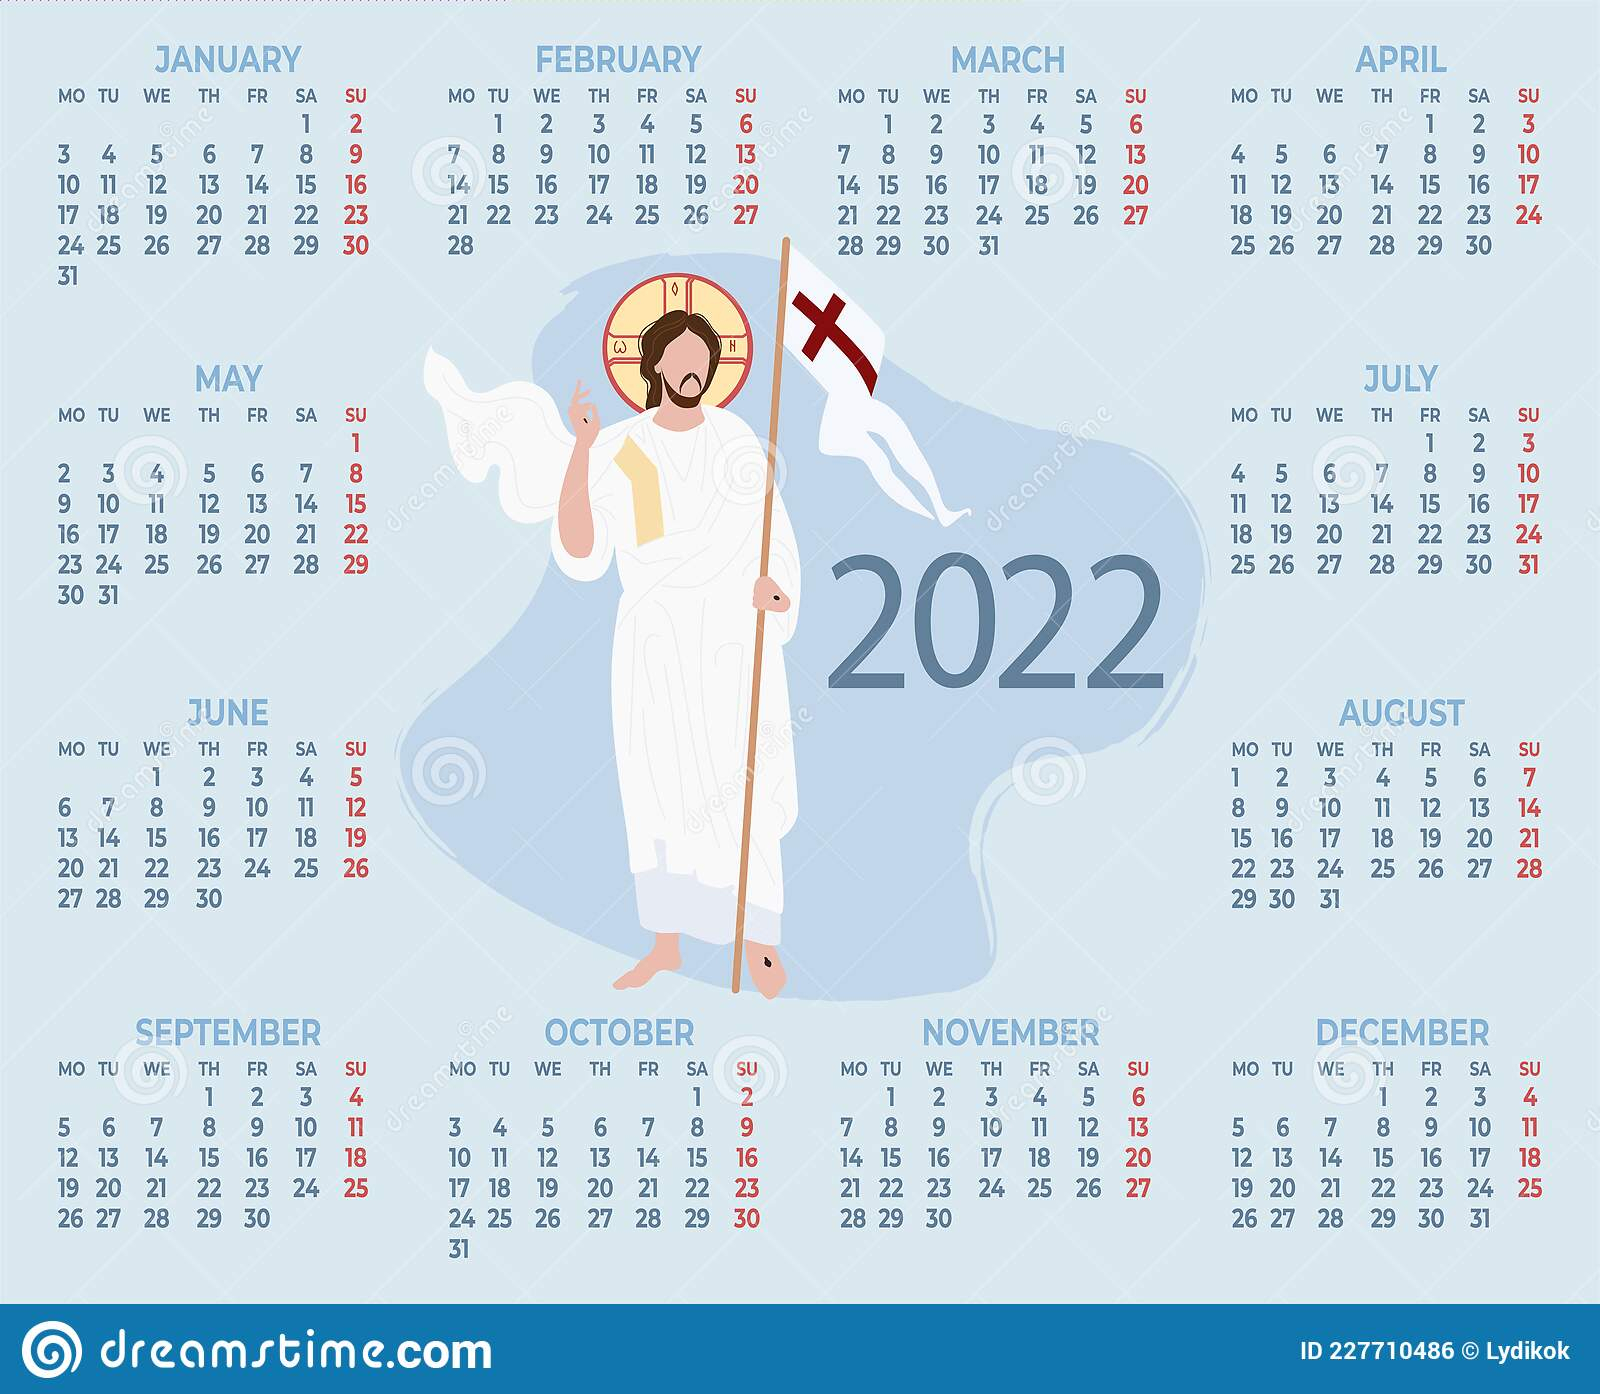 Free Catholic Calendar 2022 - Spring Calendar 2022